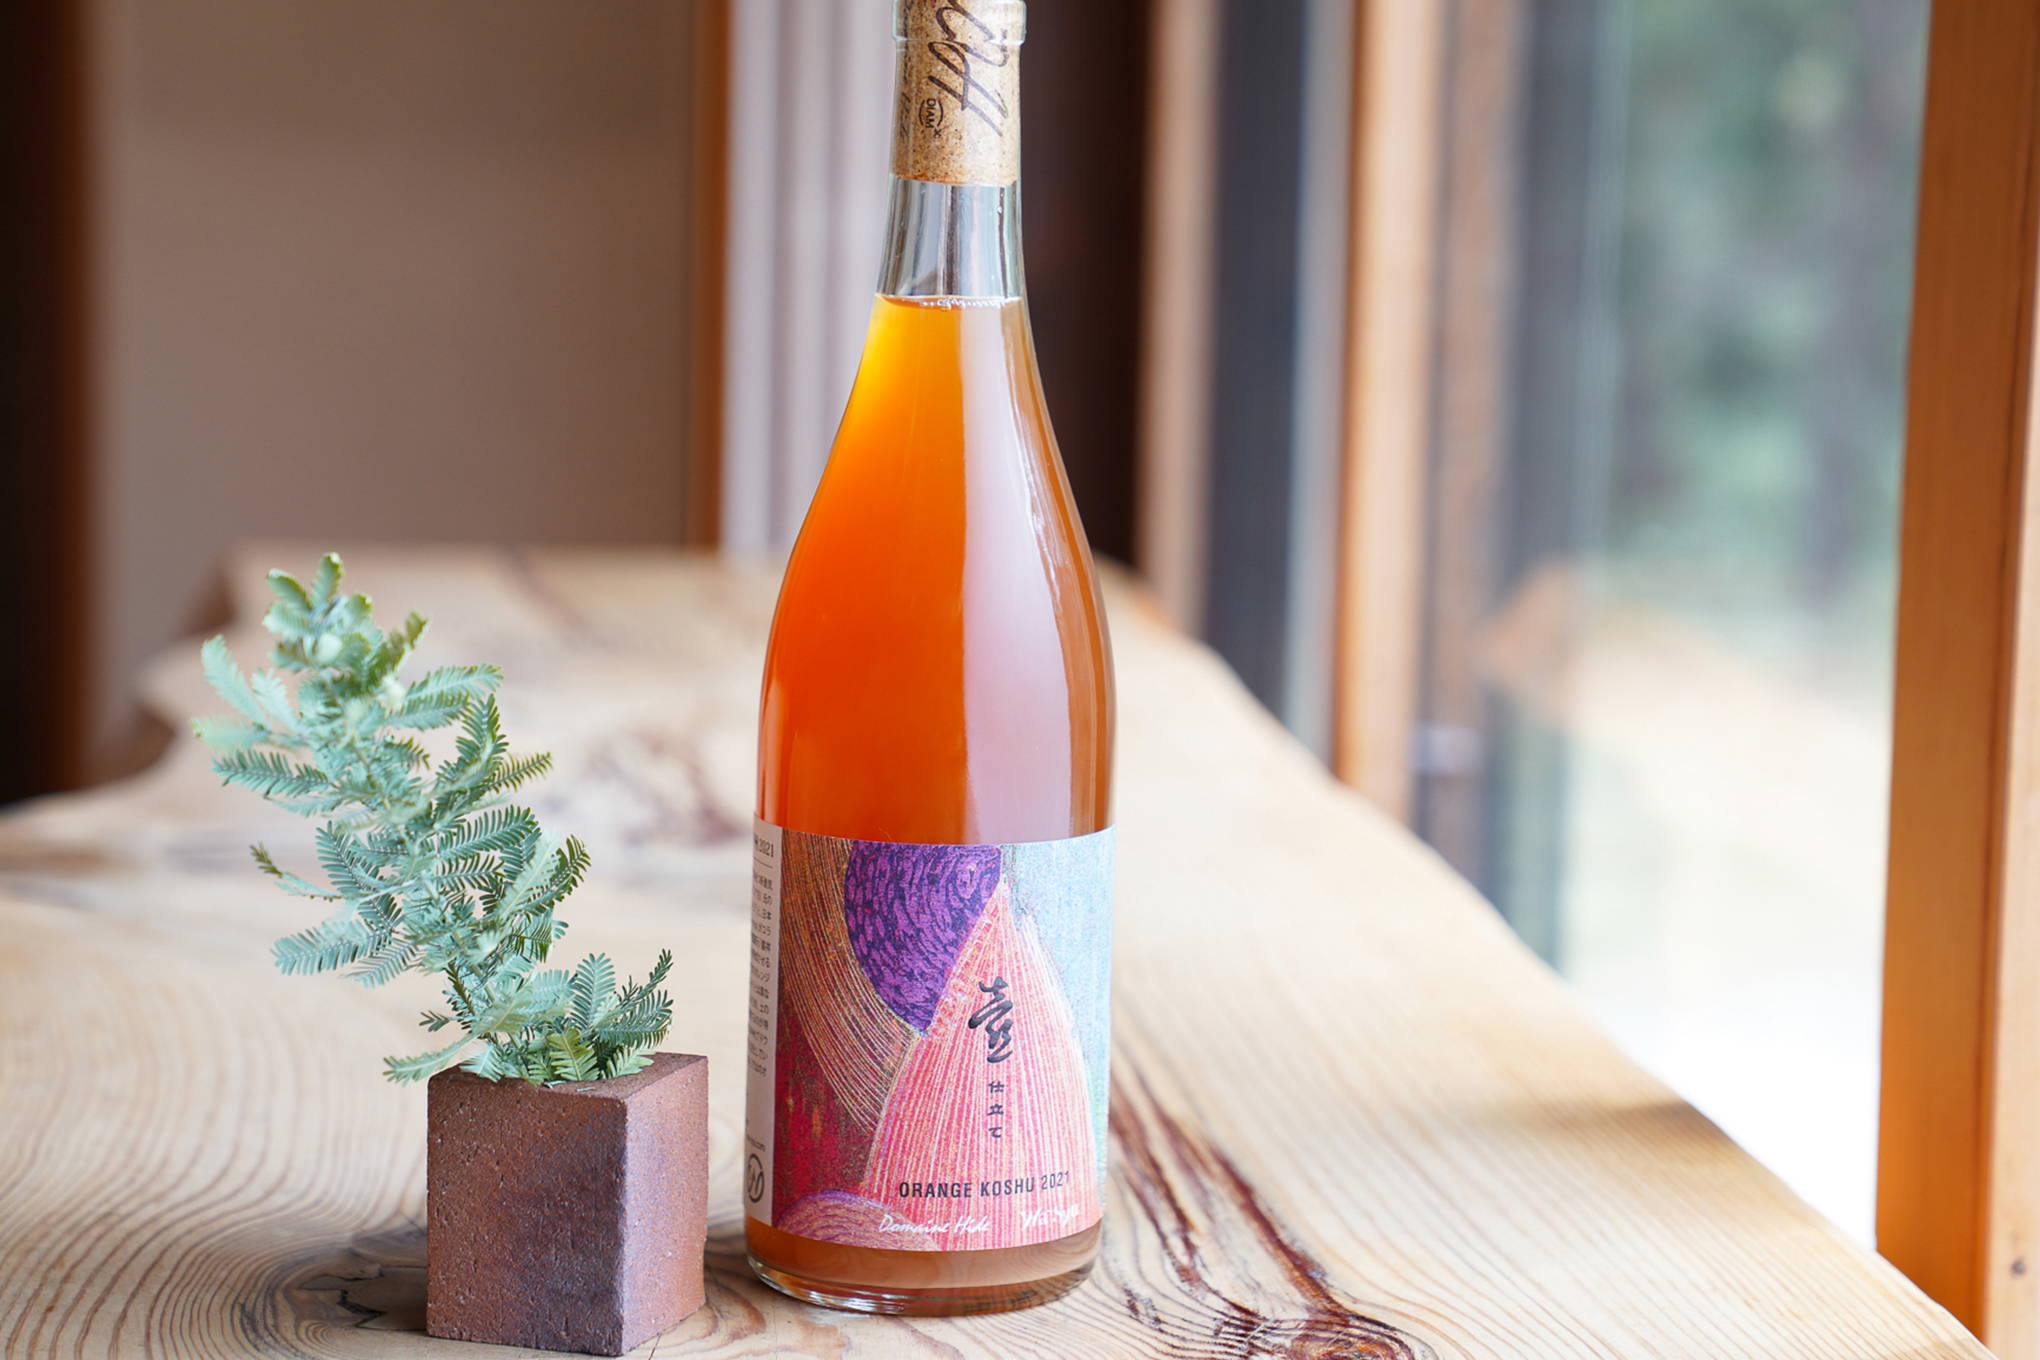 世界初の、ワインのために焼かれた陶器の壺を使ってじっくりと熟成。『ドメーヌヒデ』がwa-syuとコラボレーションした、特別なオレンジワイン。